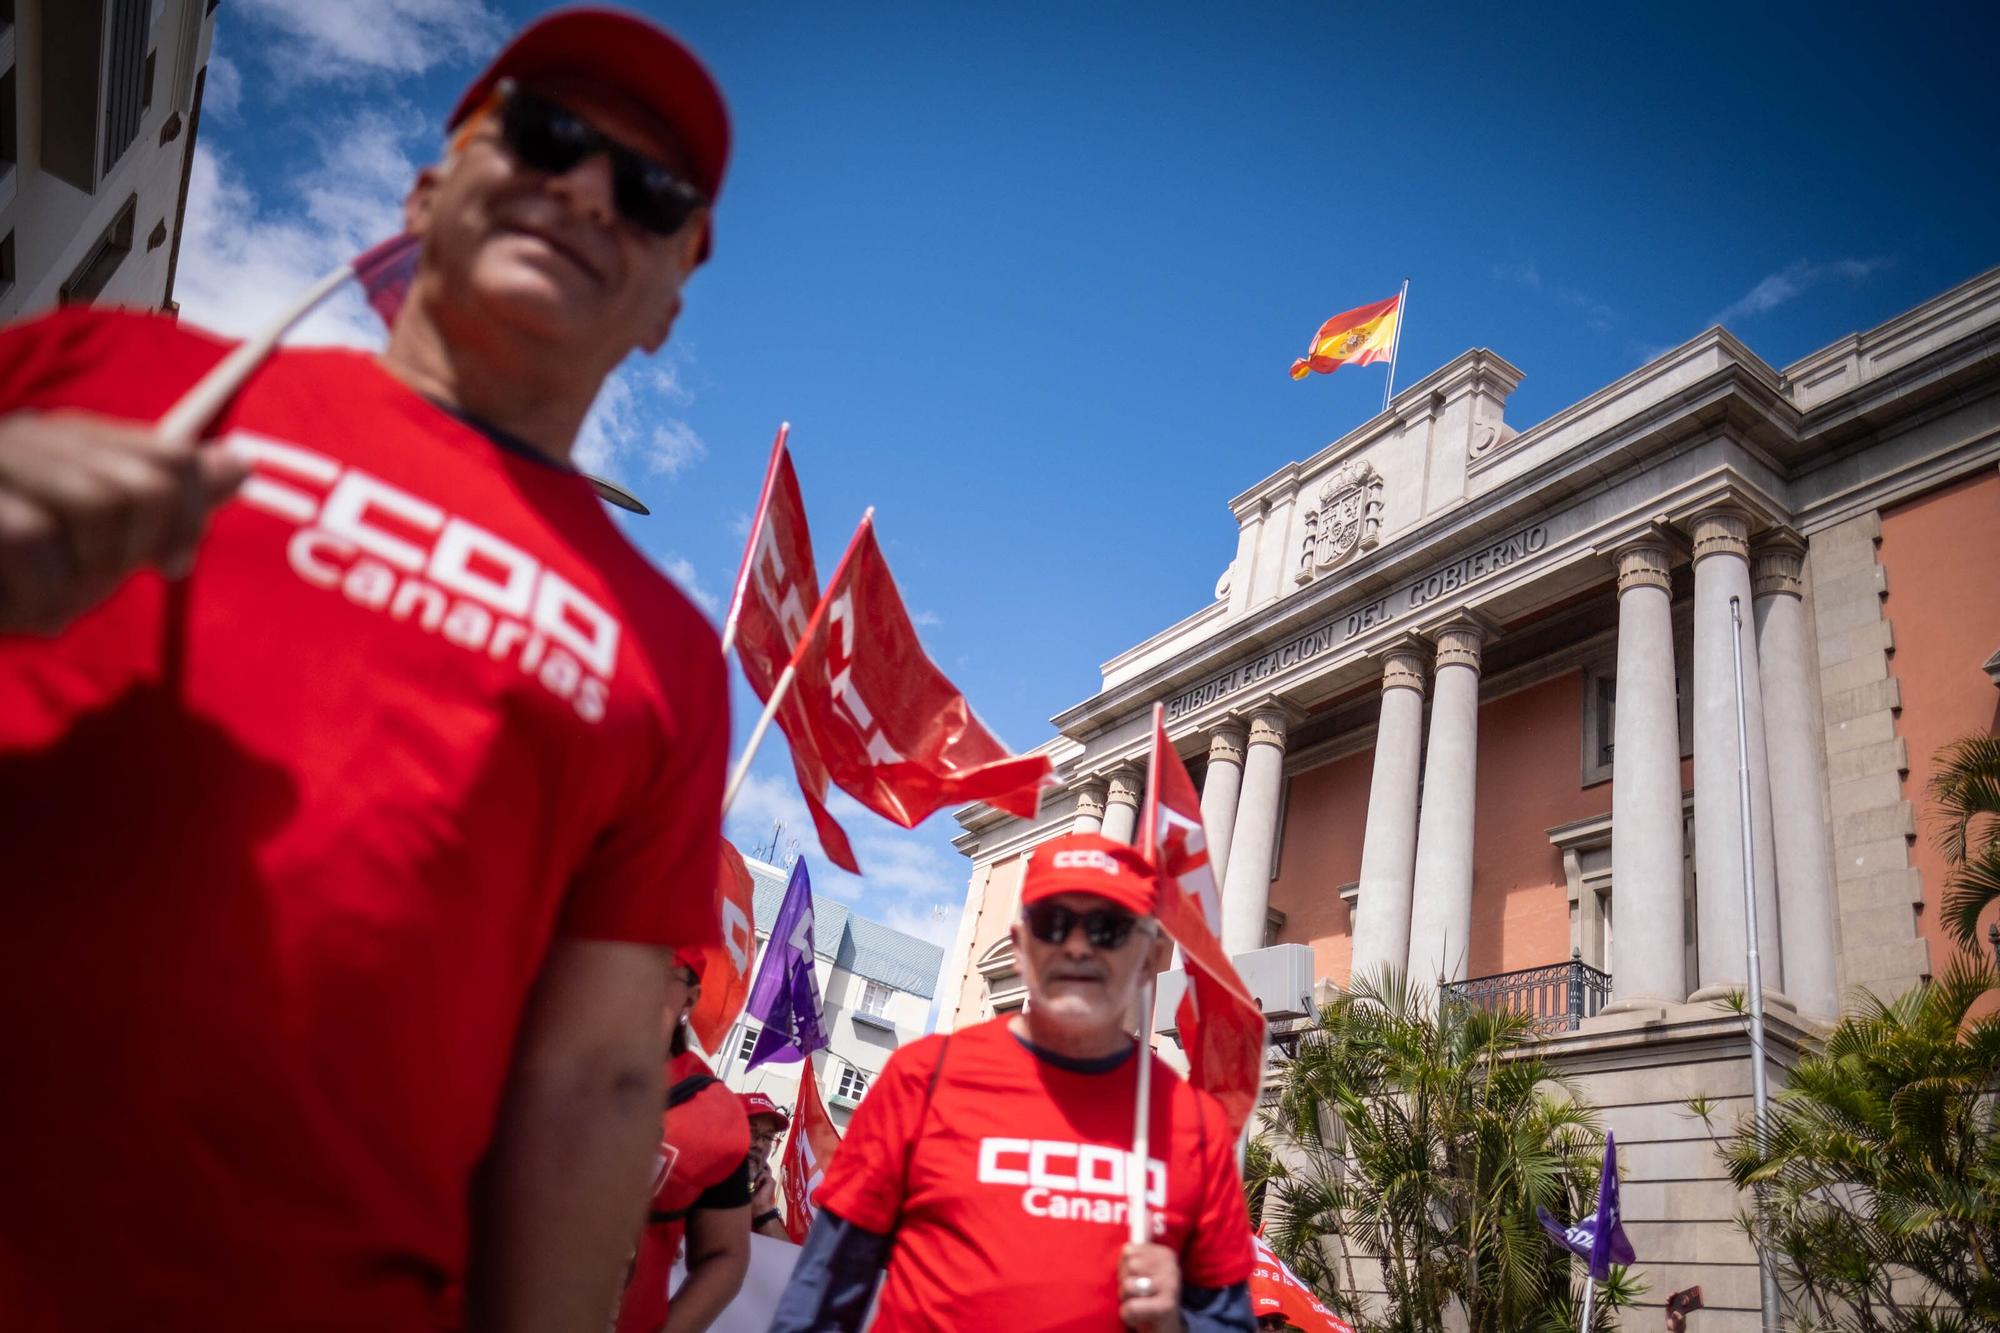 Manifestación del Primero de Mayo en Tenerife